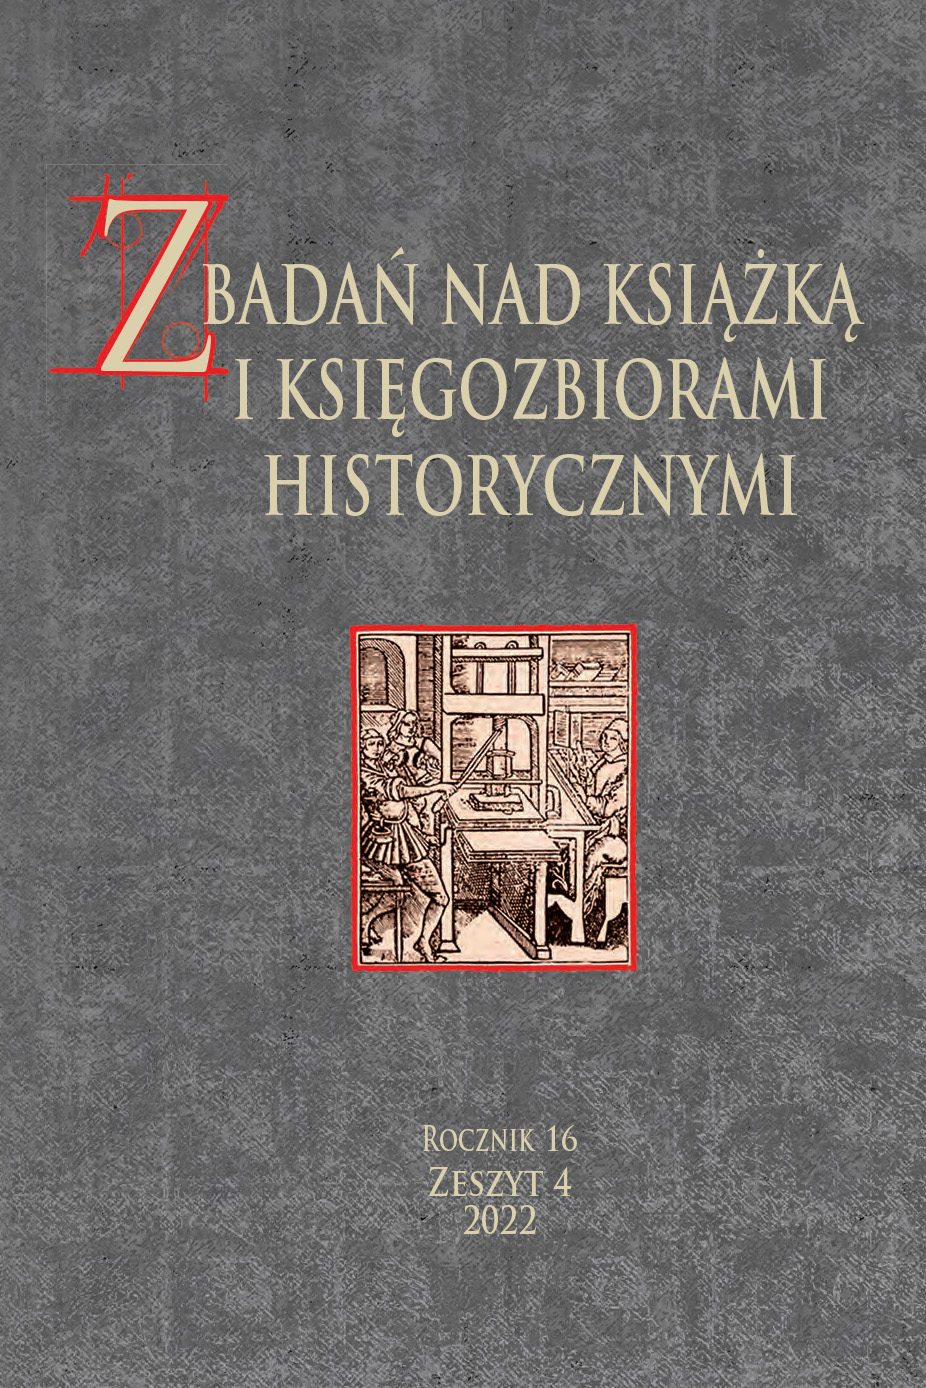 Księgozbiór Johanna Graumanna (1487–1541) w zbiorach Biblioteki Muzeum Warmii i Mazur w Olsztynie – charakterystyka kolekcji